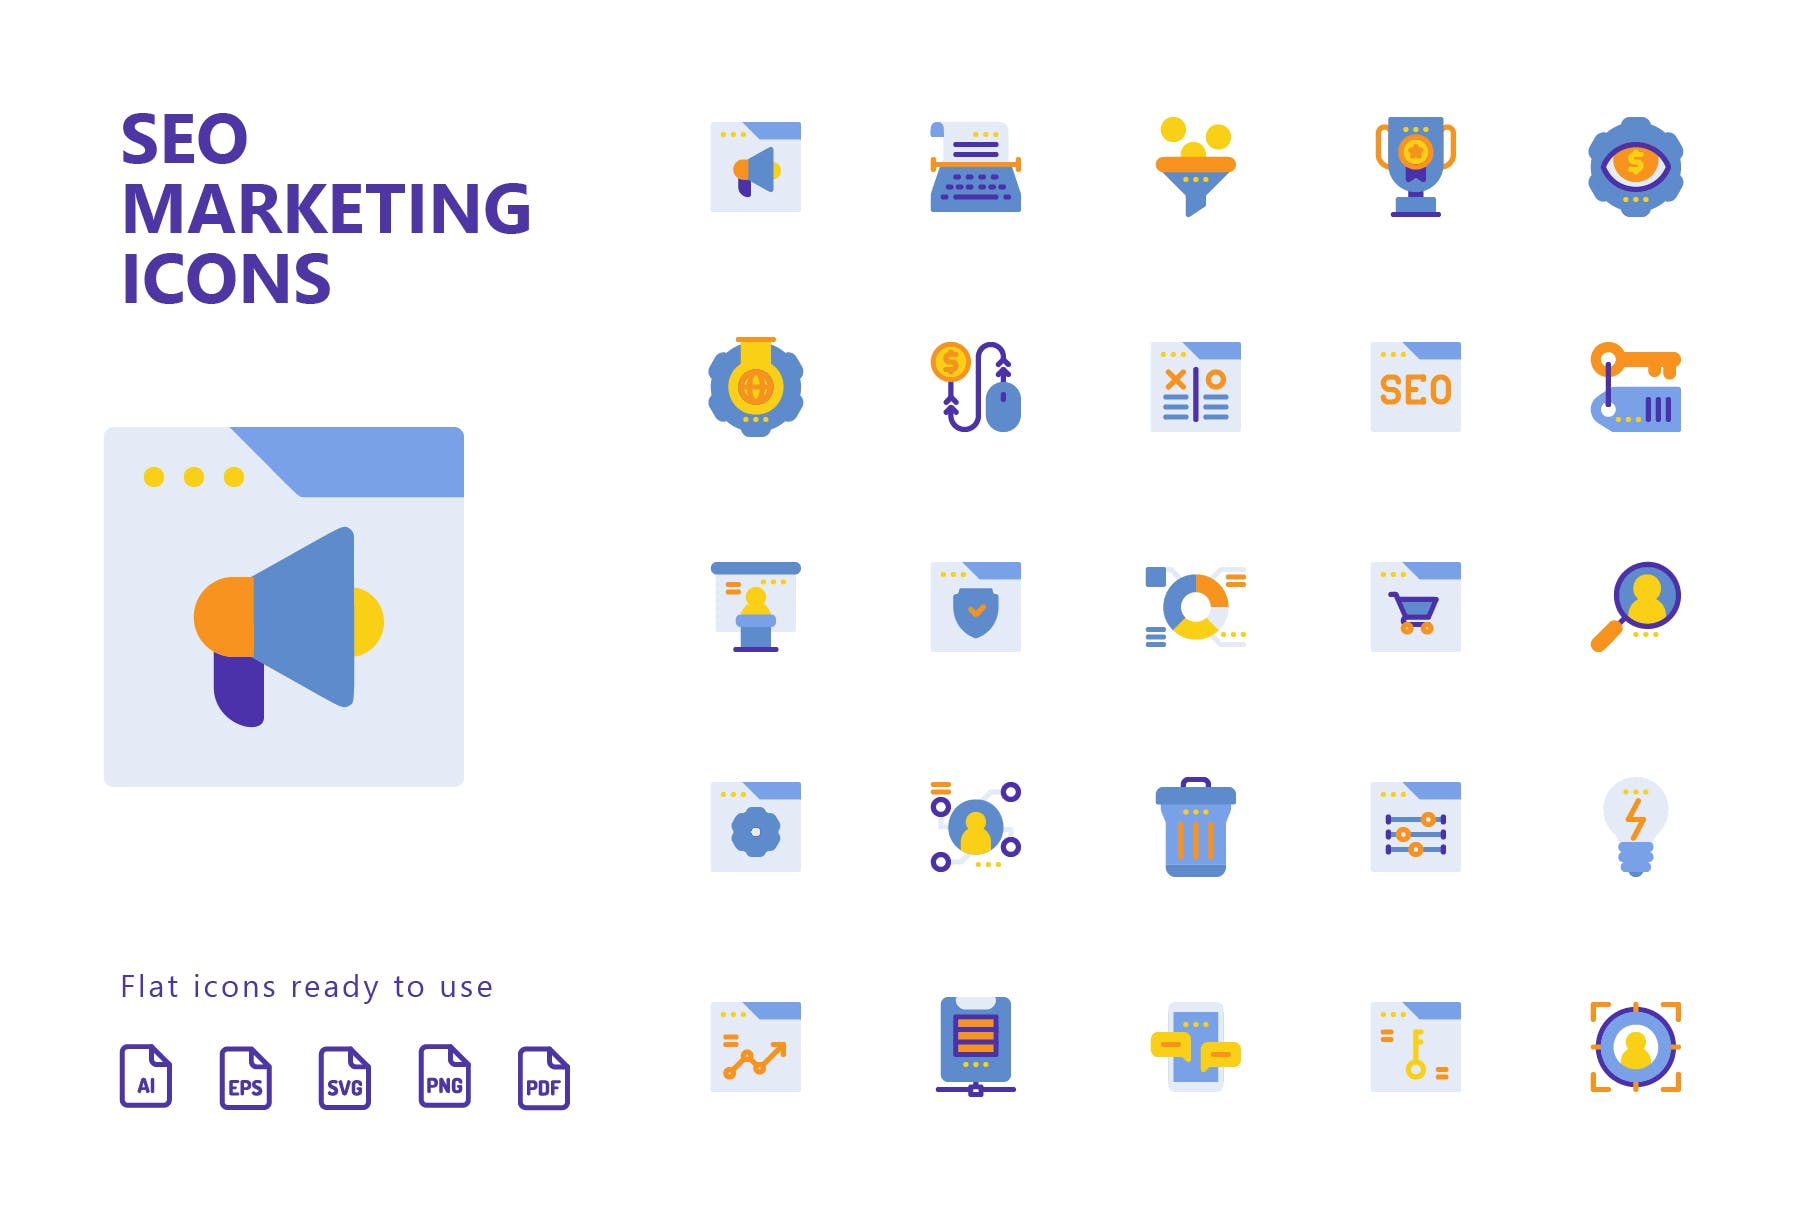 25枚SEO搜索引擎优化营销扁平化矢量蚂蚁素材精选图标v2 SEO Marketing Flat Icons插图(1)